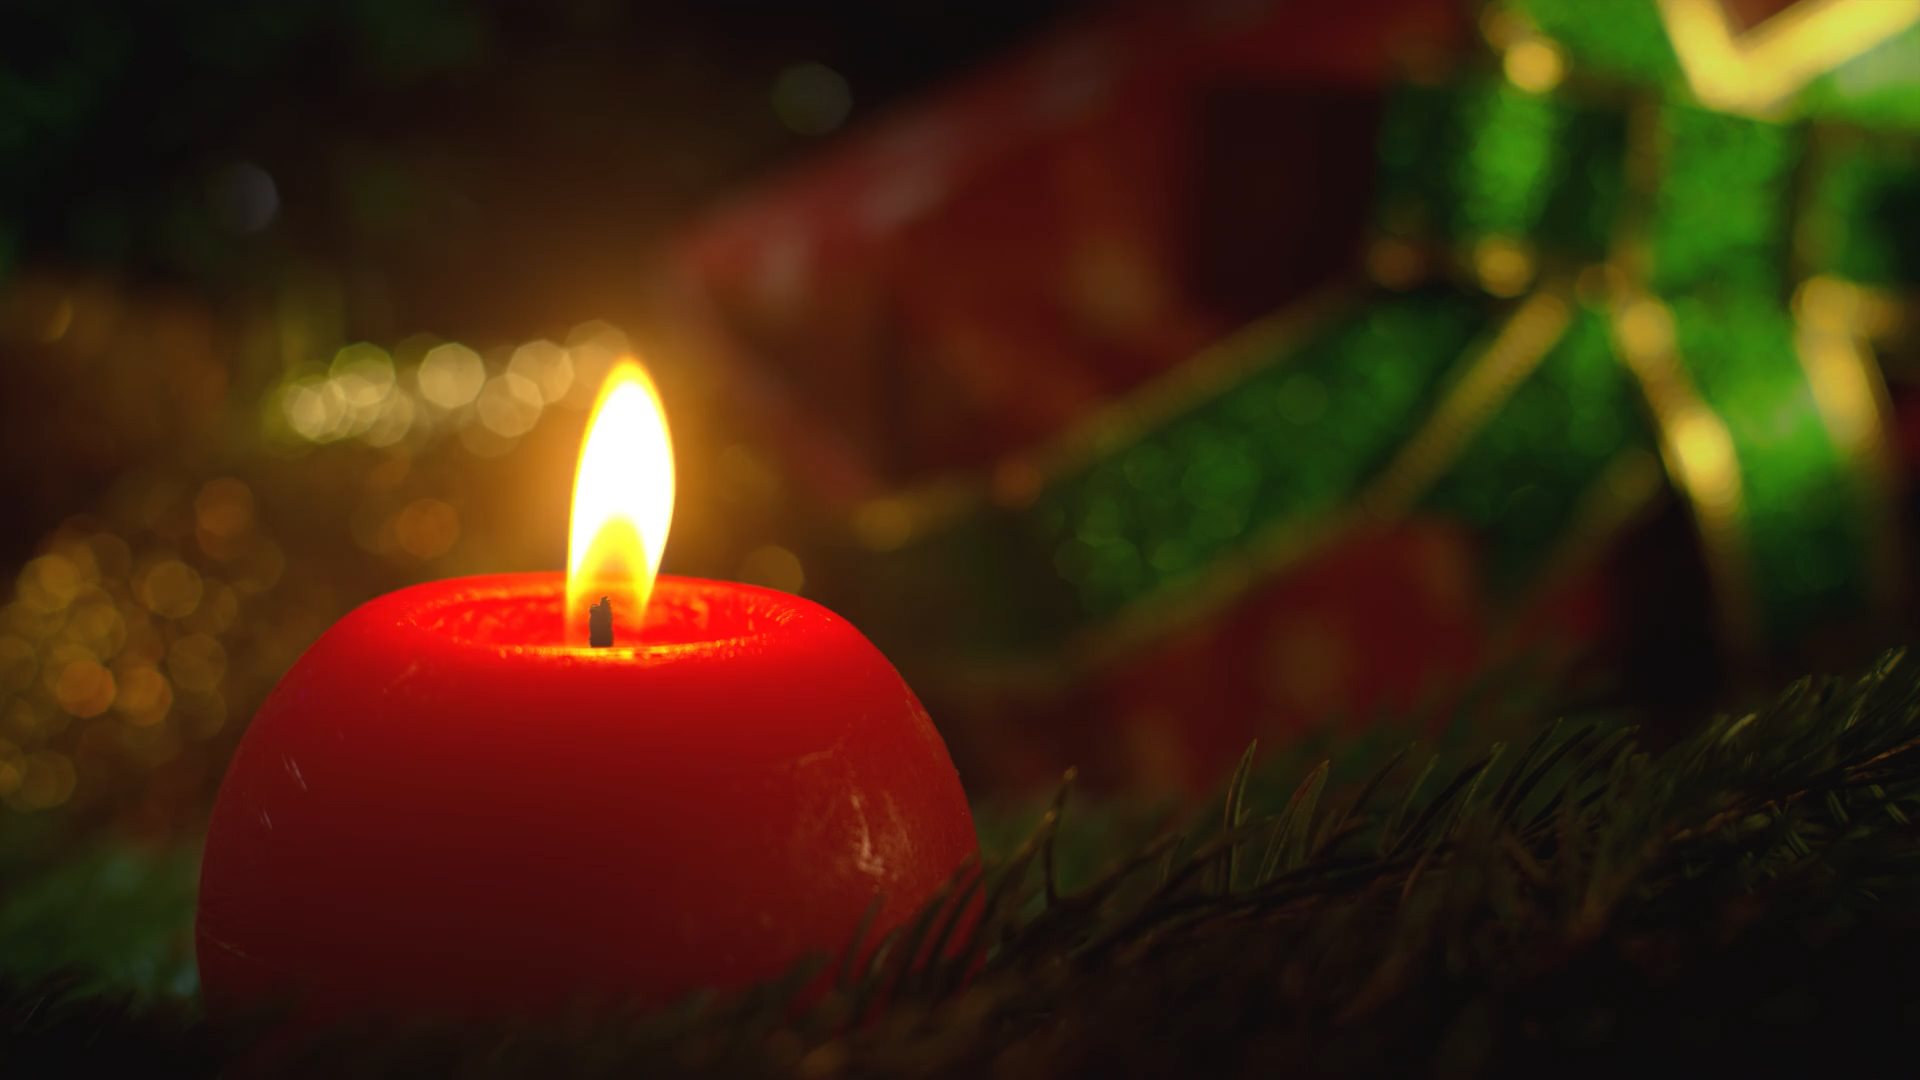 Video von brenndender roter Kerze mit Weihnachtsgeschenk